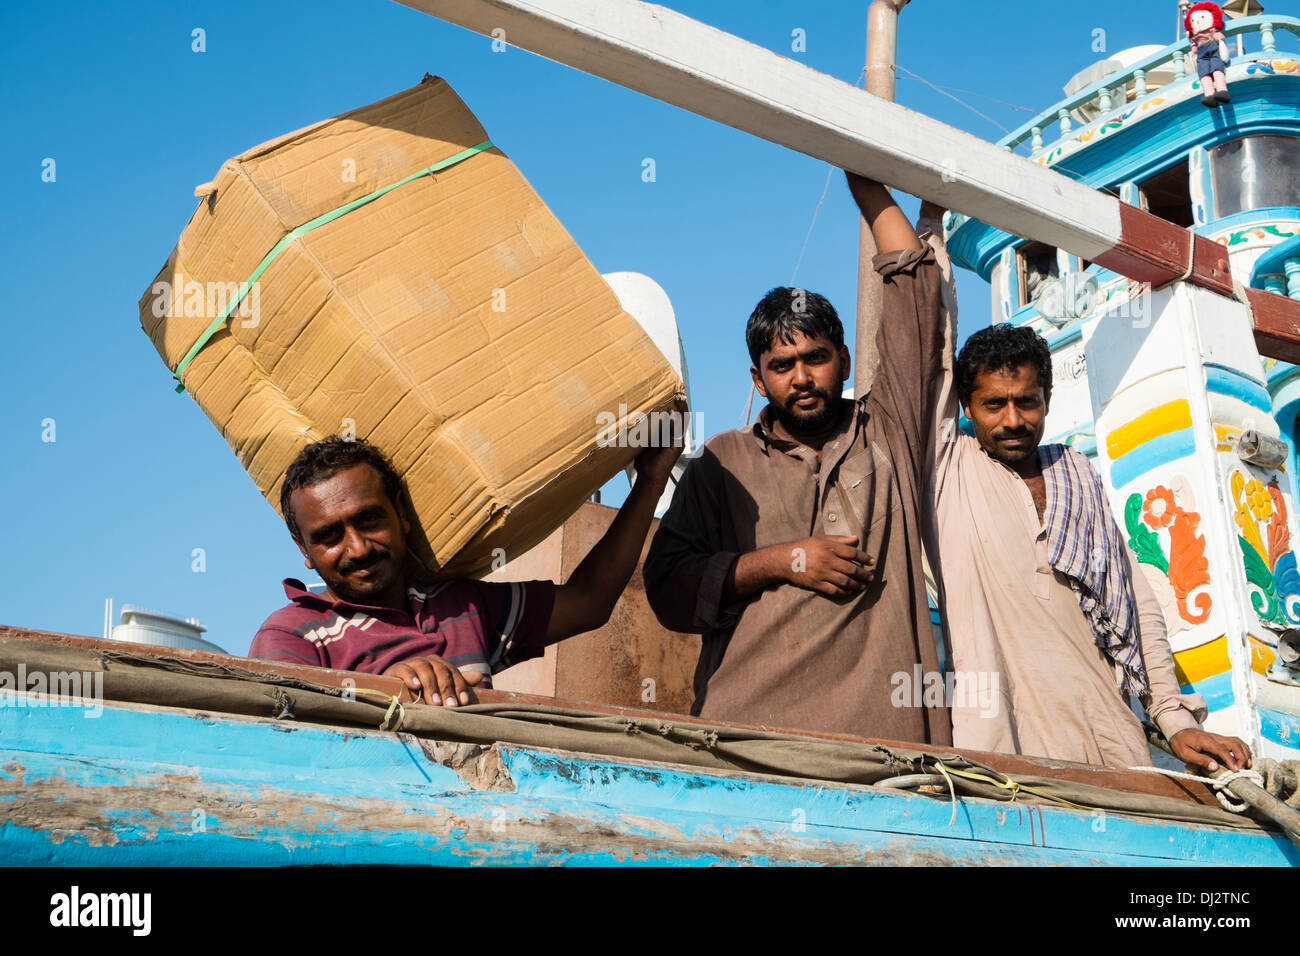 Gli uomini carichi di caricamento sul Dhow alla banchina di carico sul Creek di Dubai Emirati Arabi Uniti Foto Stock